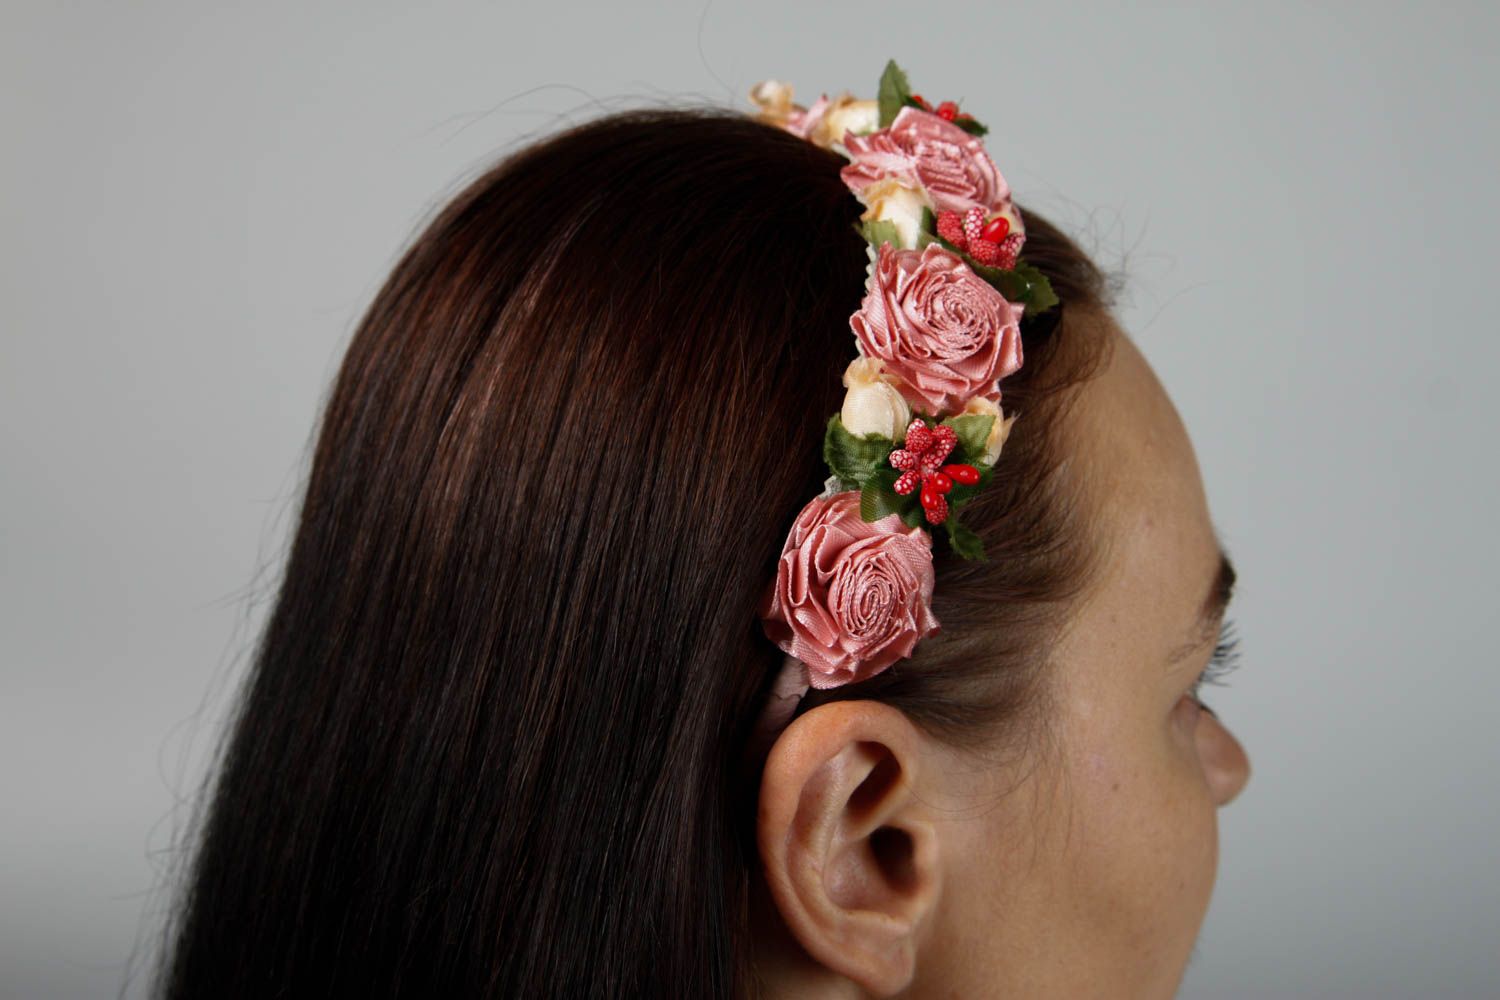 Handmade Blumen Haarreif Haar Schmuck Accessoire für Frauen ausgefallen foto 2